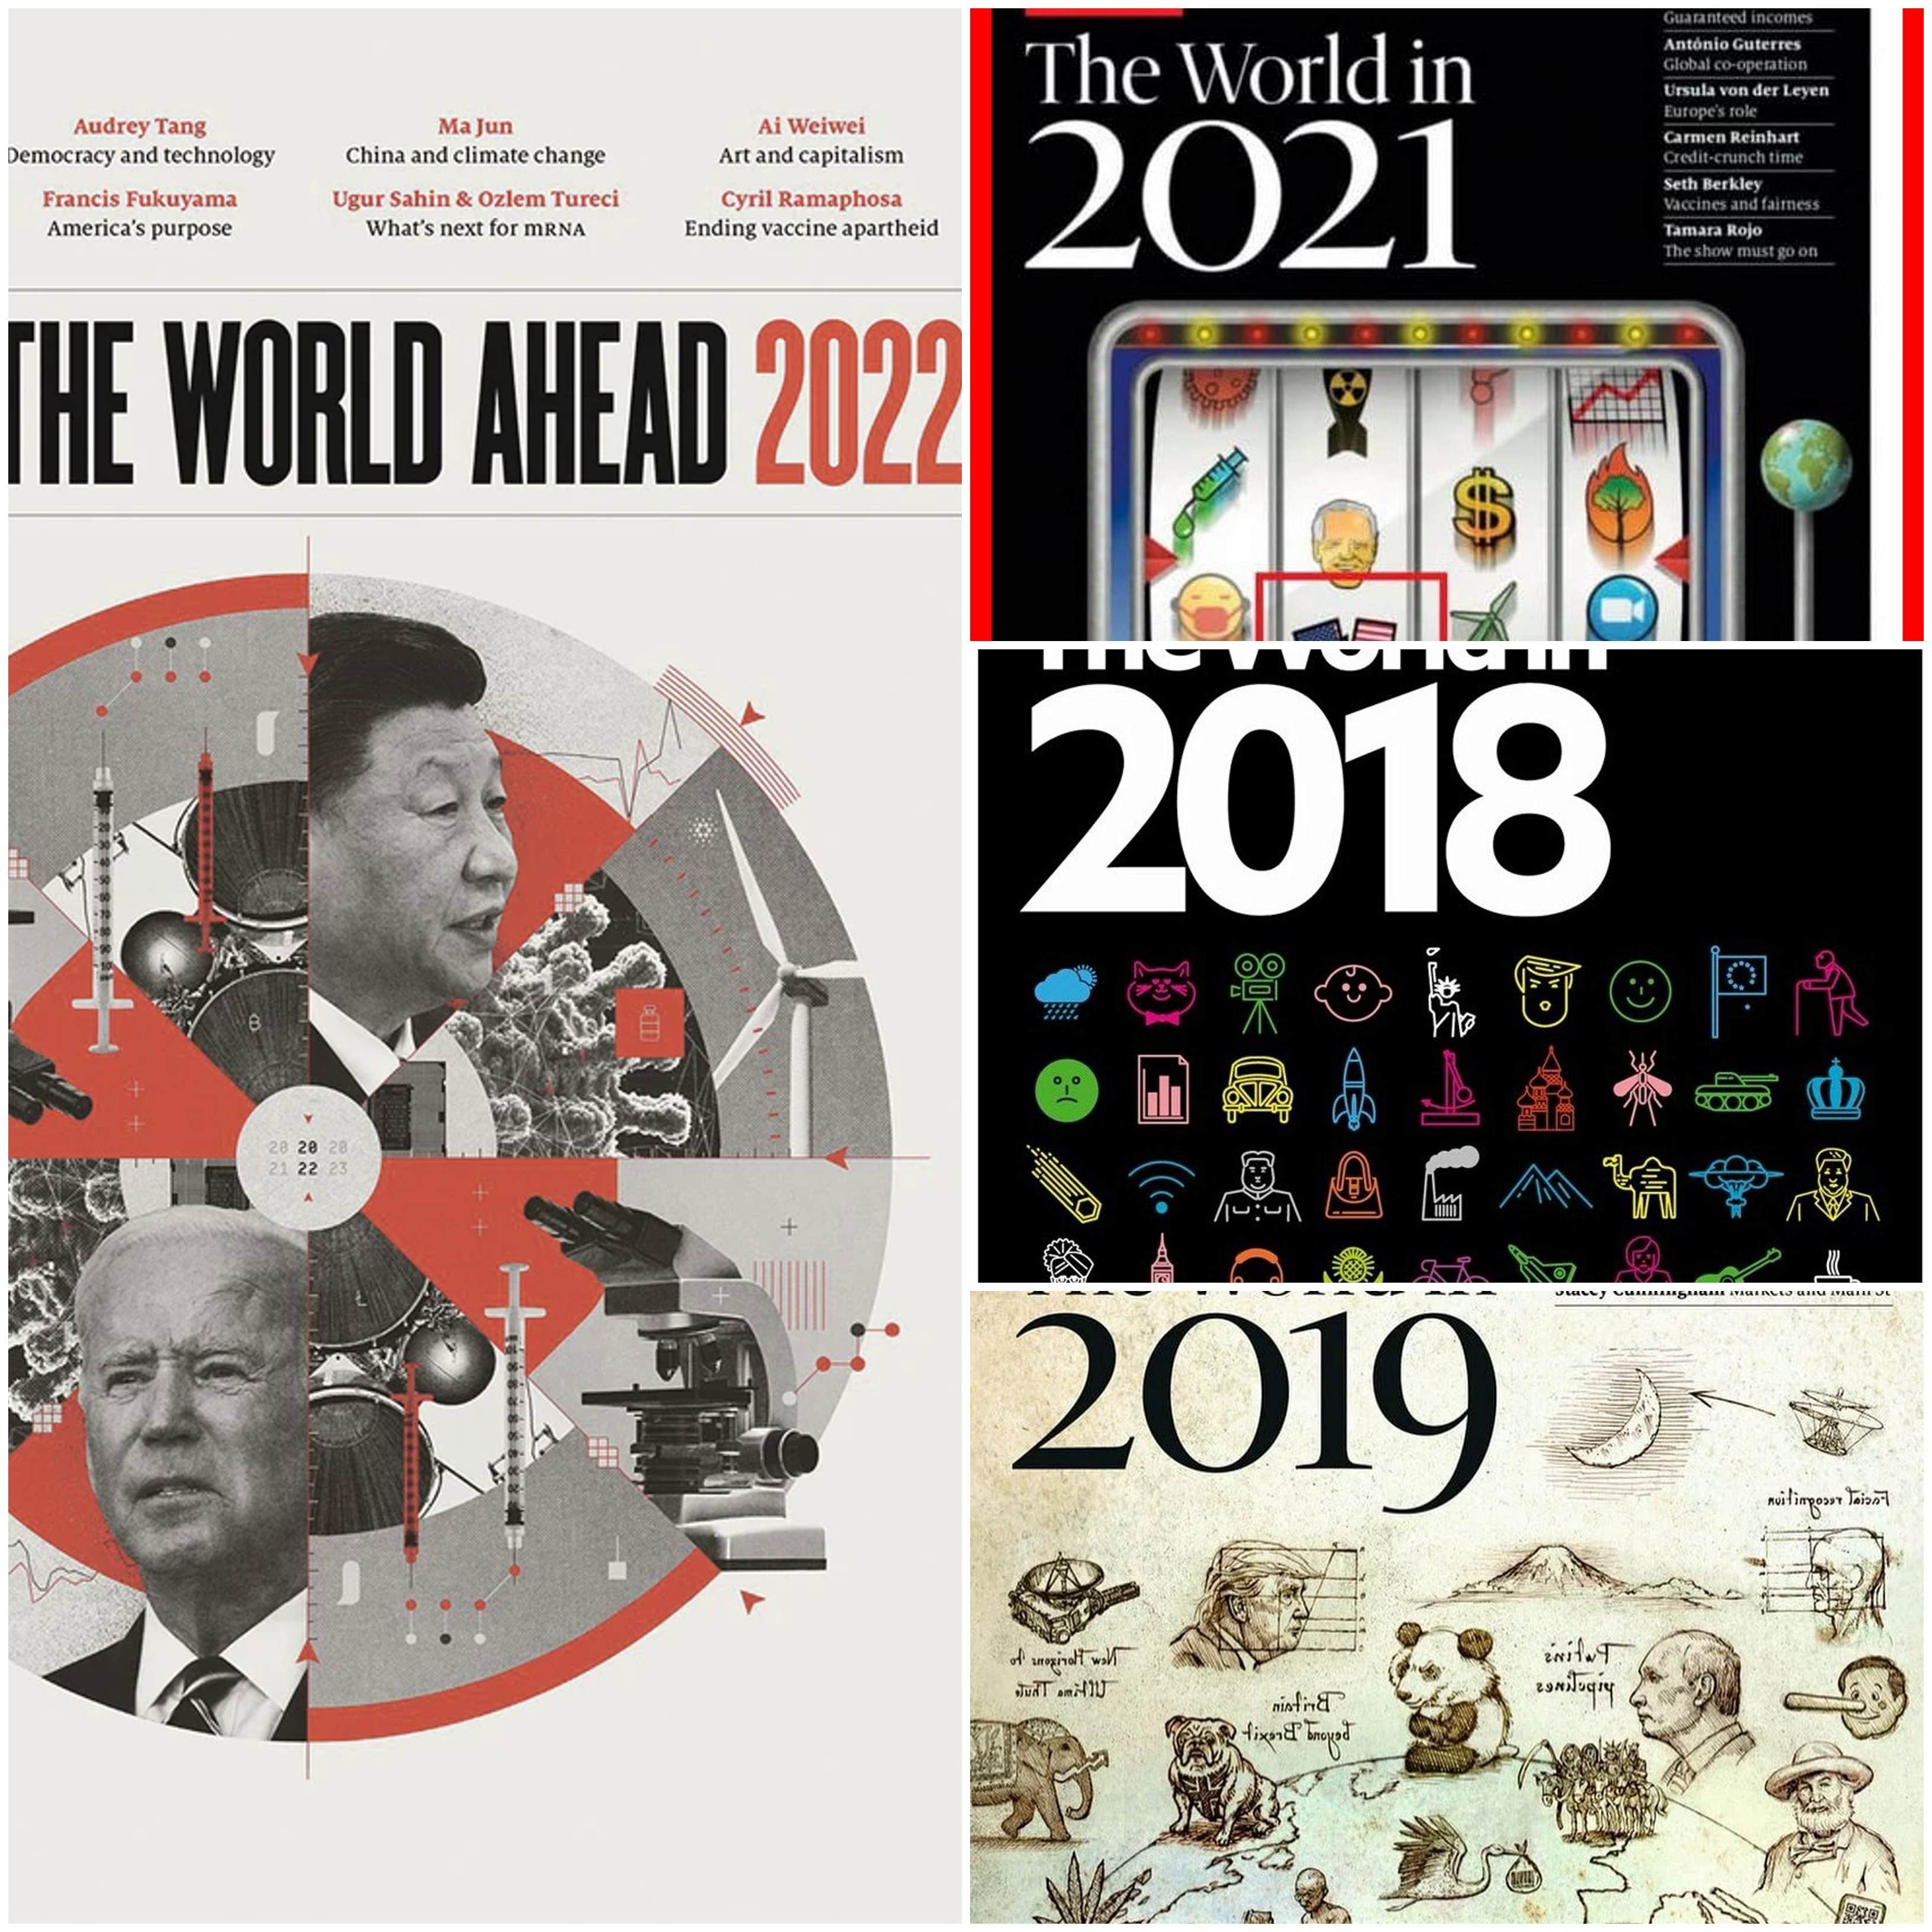 Экономические журналы 2023. The Economist 2022 обложка. Ротшильд журнал экономист 2023. Обложка журнала the Economist сентябрь 2022. The Economist обложка октябрь 2022.